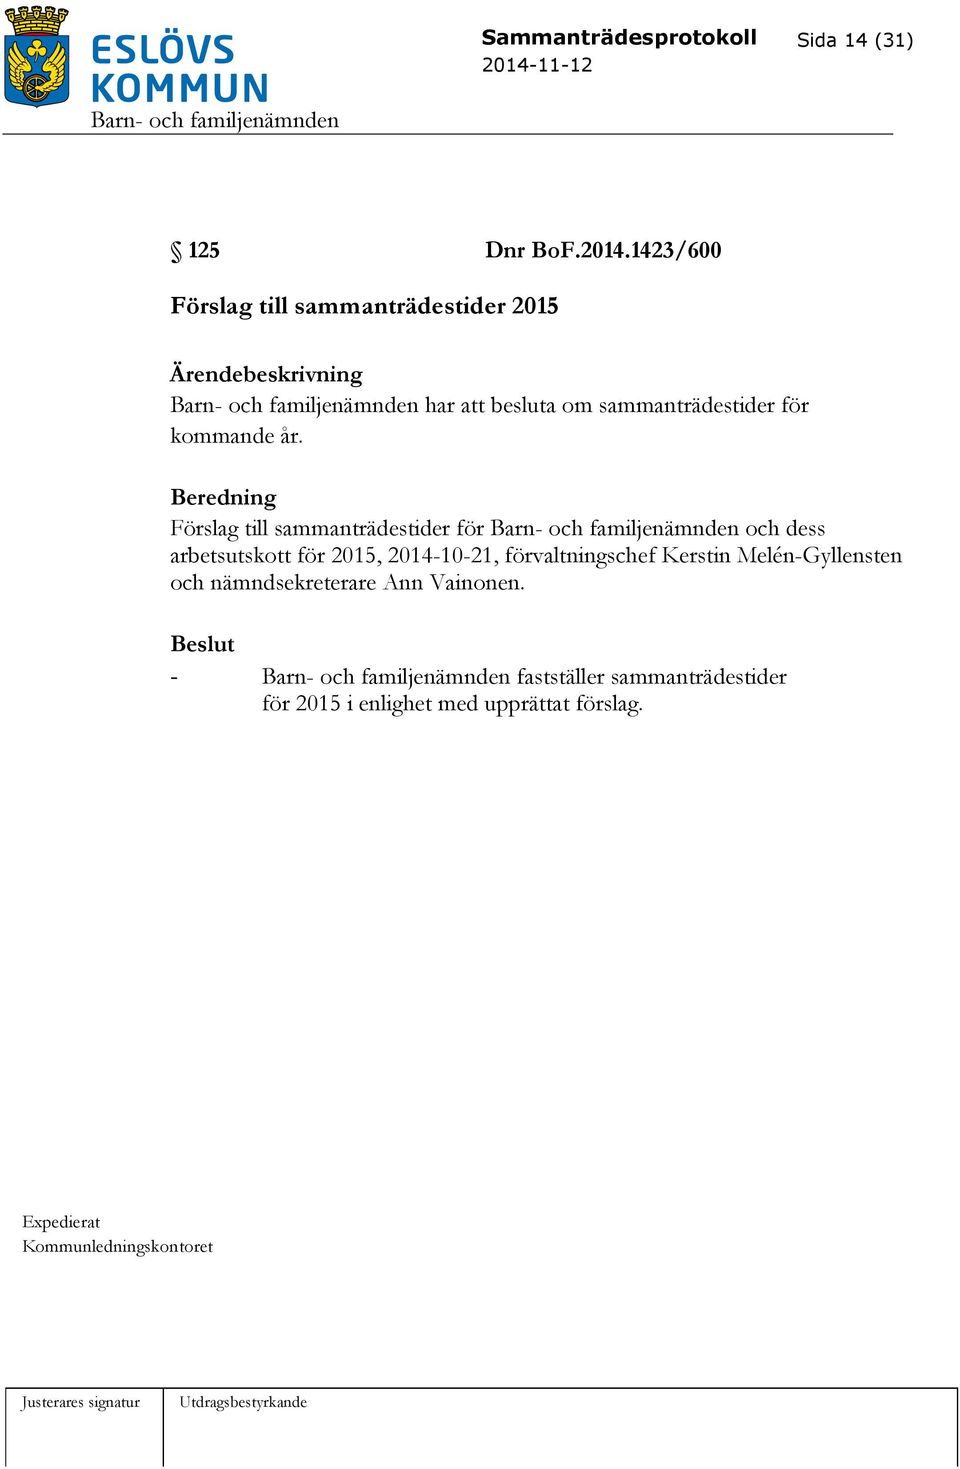 Beredning Förslag till sammanträdestider för och dess arbetsutskott för 2015, 2014-10-21, förvaltningschef